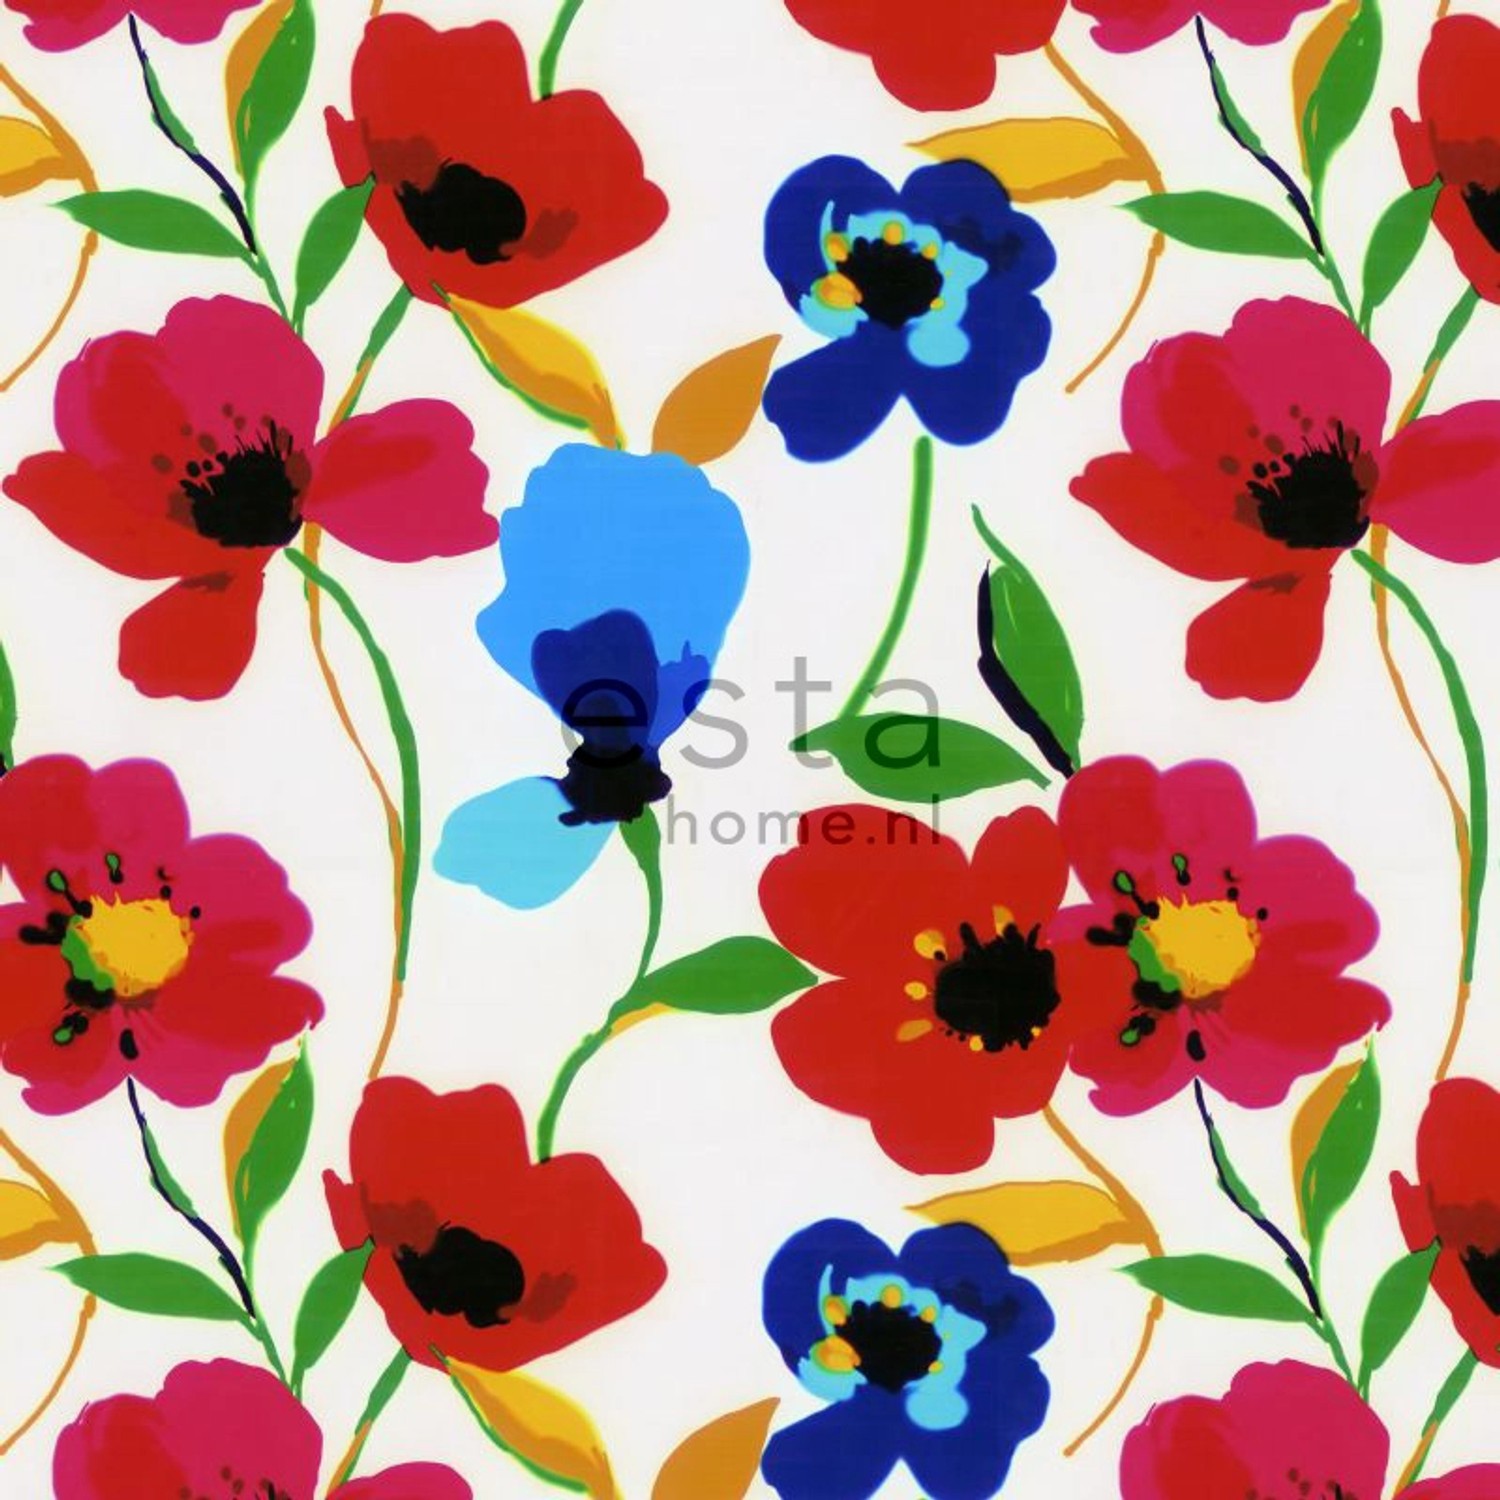 ESTAhome Fototapete Mohnblumen Rot Blau Gelb und Grün 279 cm x 279 m 158007 günstig online kaufen